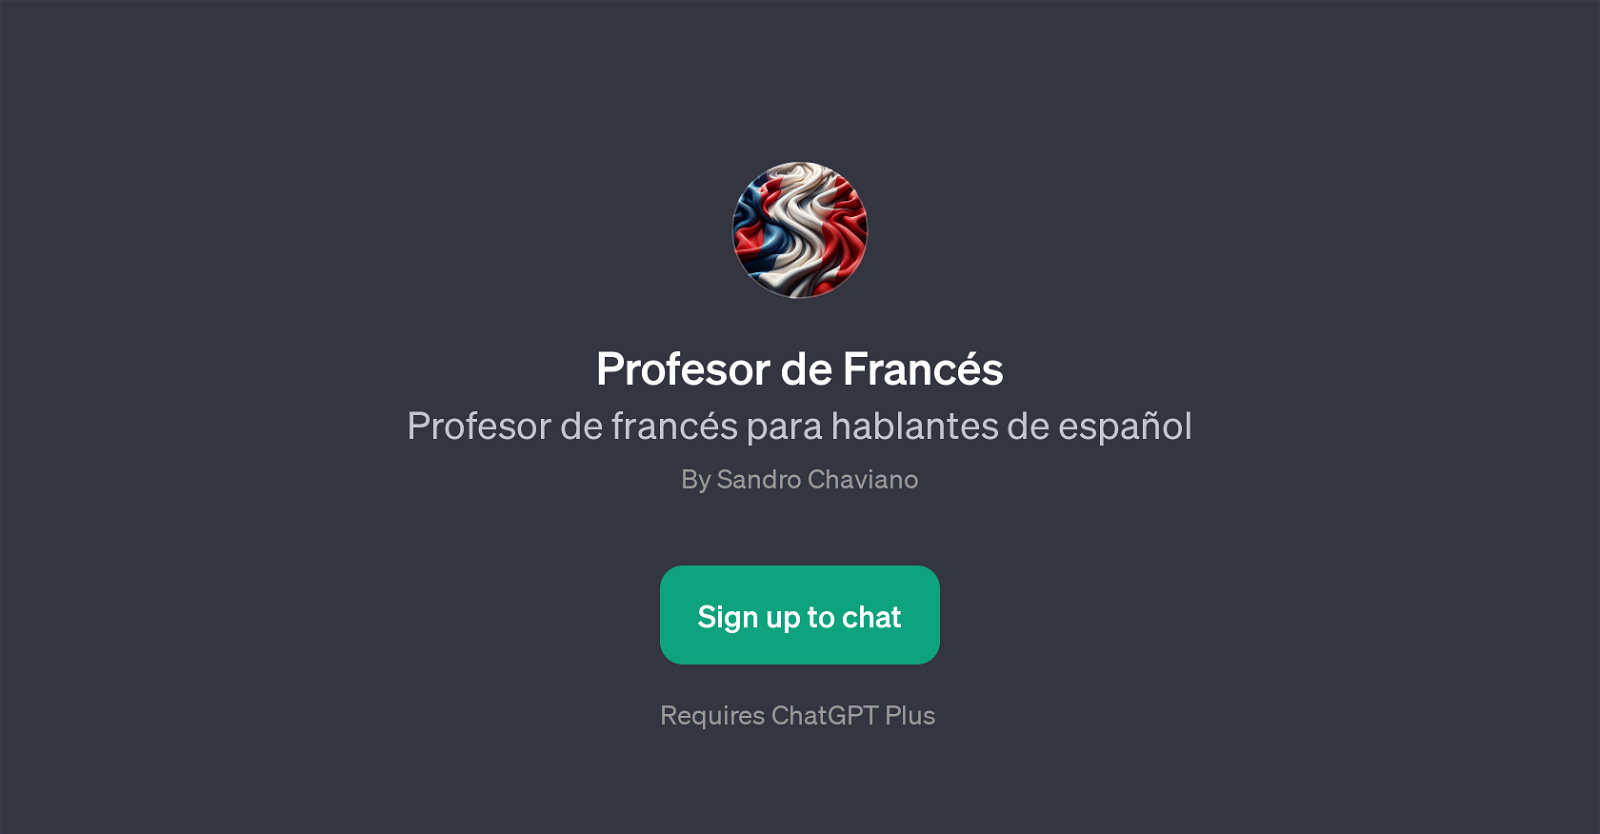 Profesor de Francs website